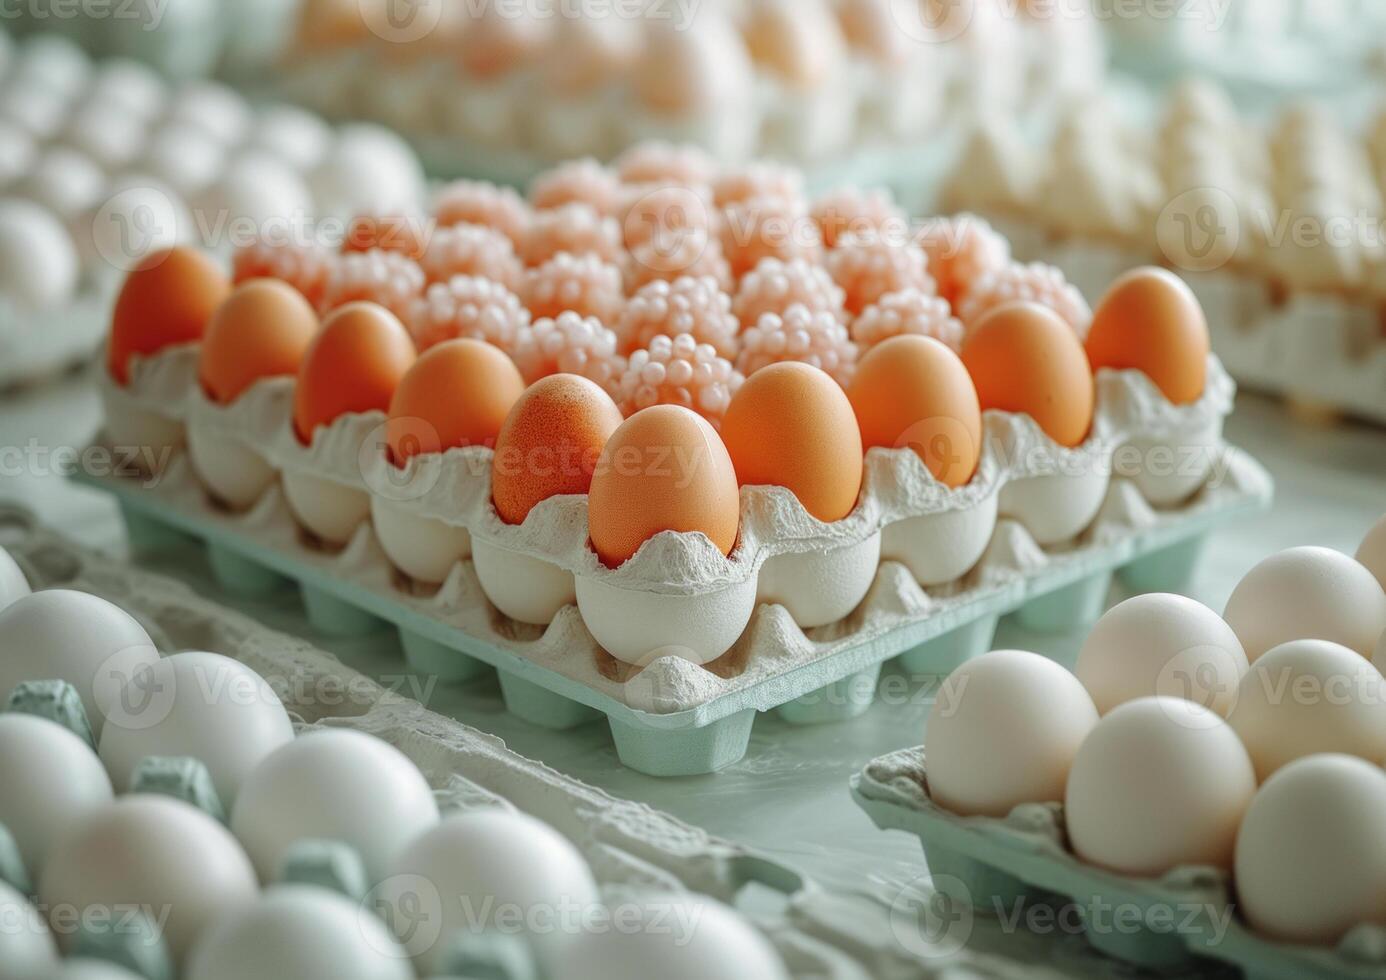 ai gerado fresco frango ovos dentro cartão caixa. caixotes preenchidas com branco e laranja ovos estão cercado de bandejas cheio do ovos foto